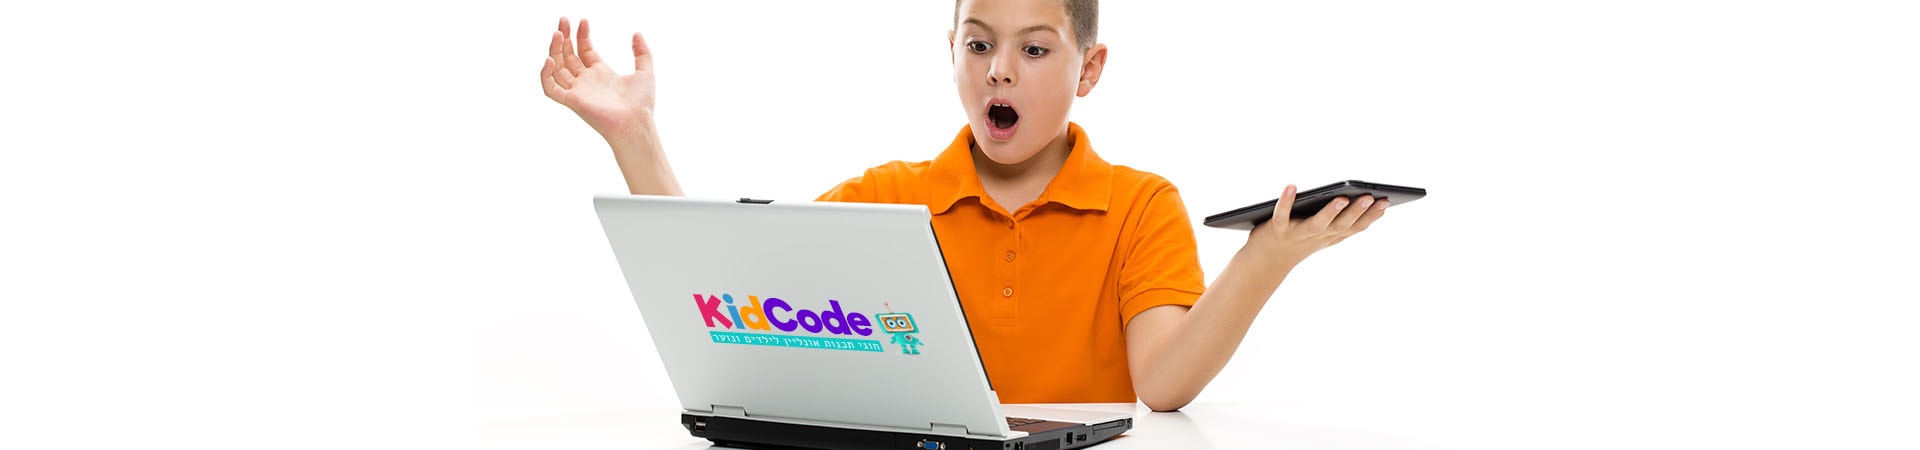 קיד קוד - מידע לילדים